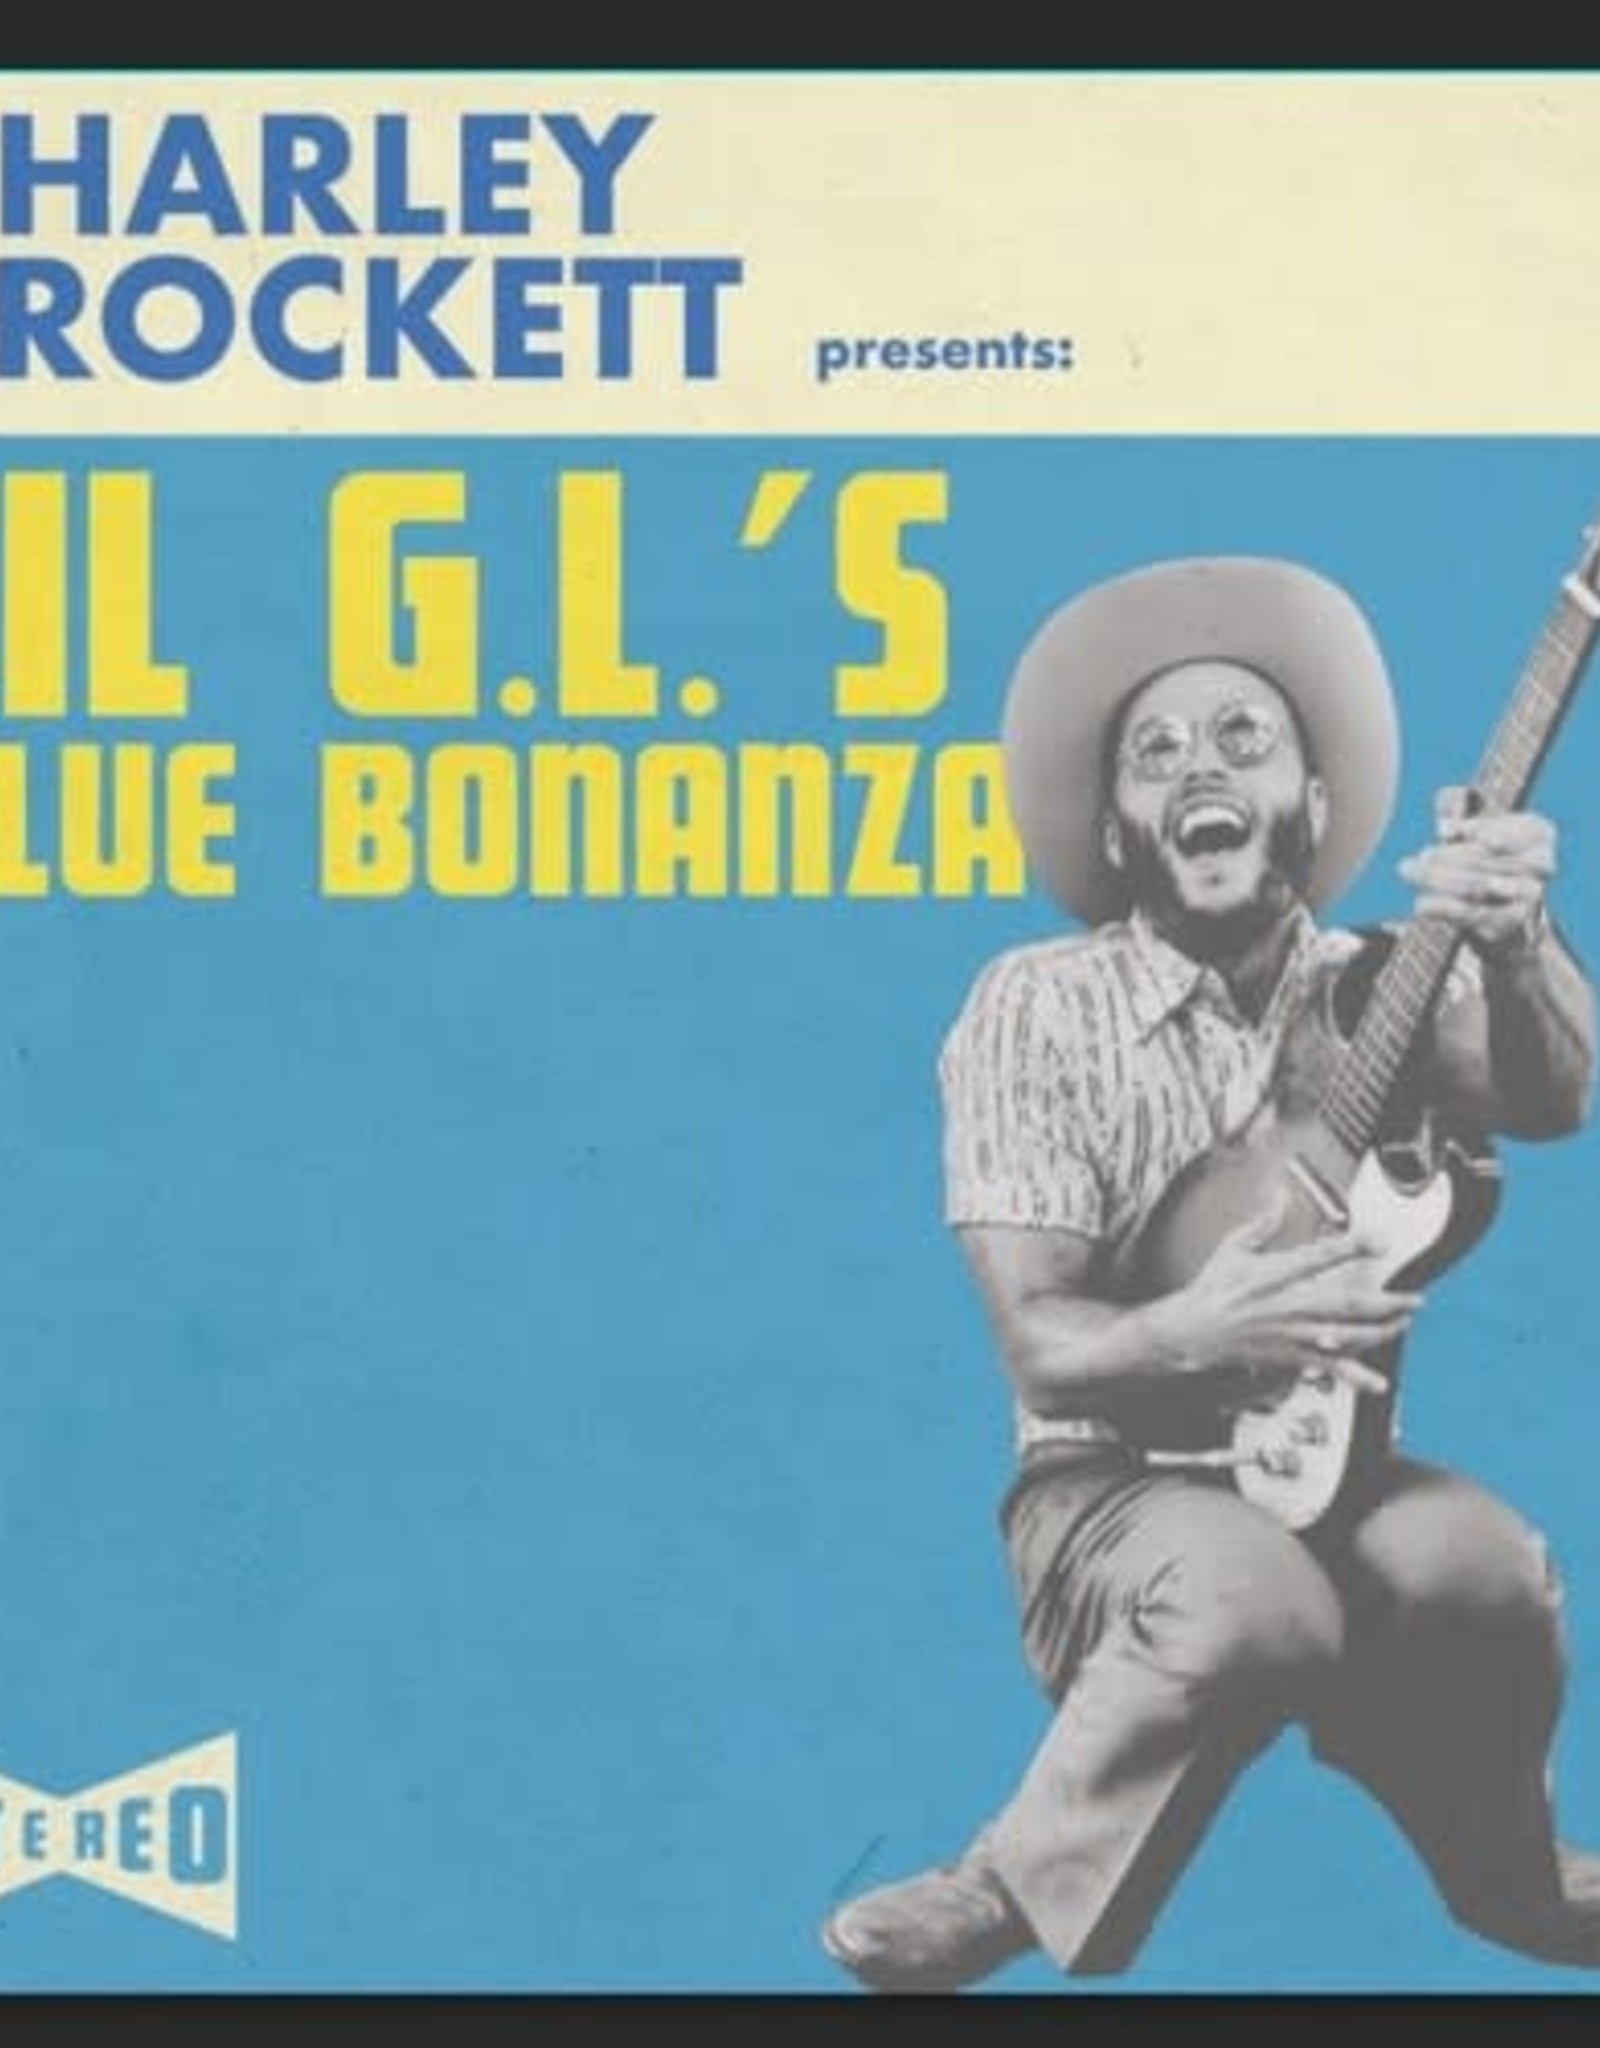 Charley Crockett - Lil G.l.'s Blue Bonanza